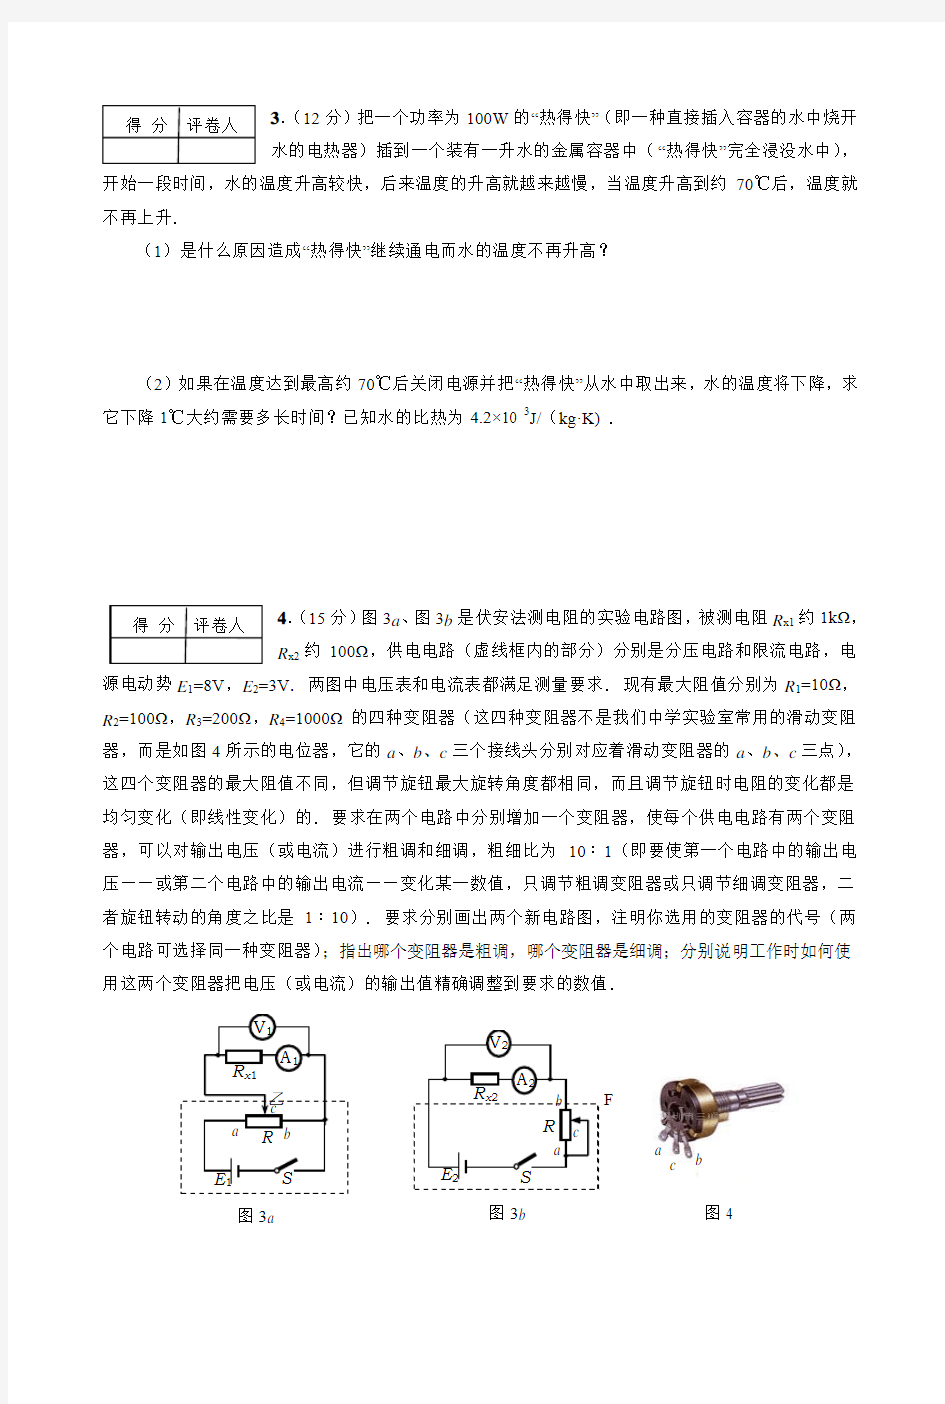 全国高中应用物理知识竞赛北京赛区决赛试卷(印刷版)